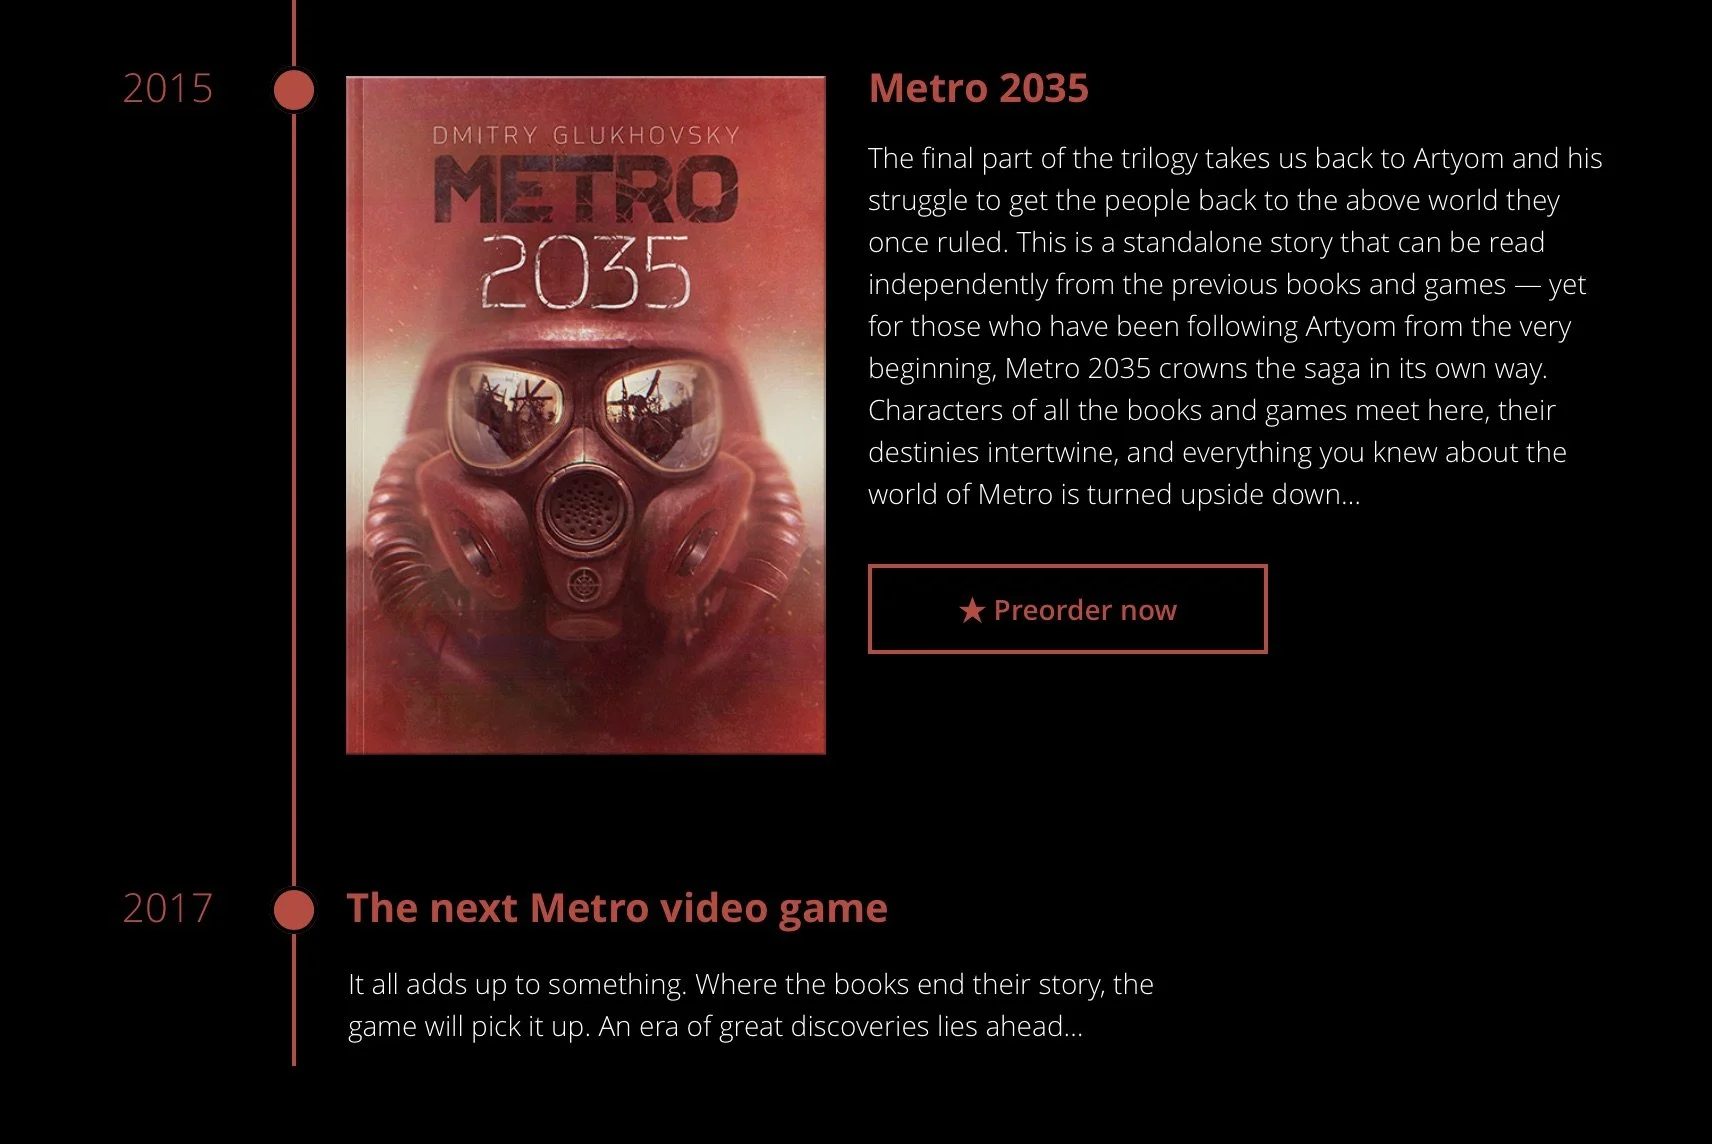 Следующая игра в серии Metro выйдет в 2017-м - фото 2